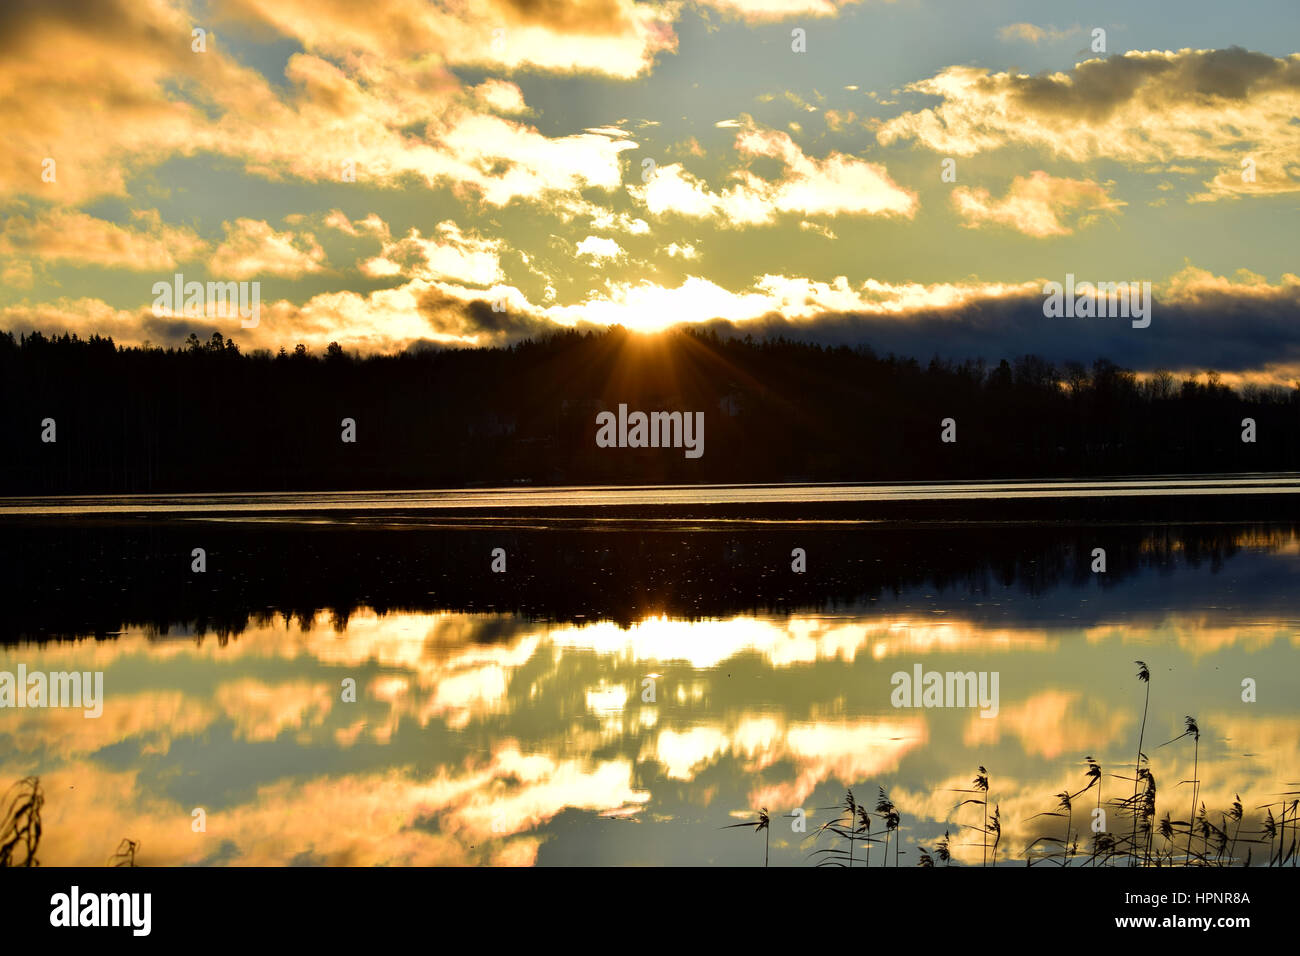 Sunrise on the lake. Stock Photo